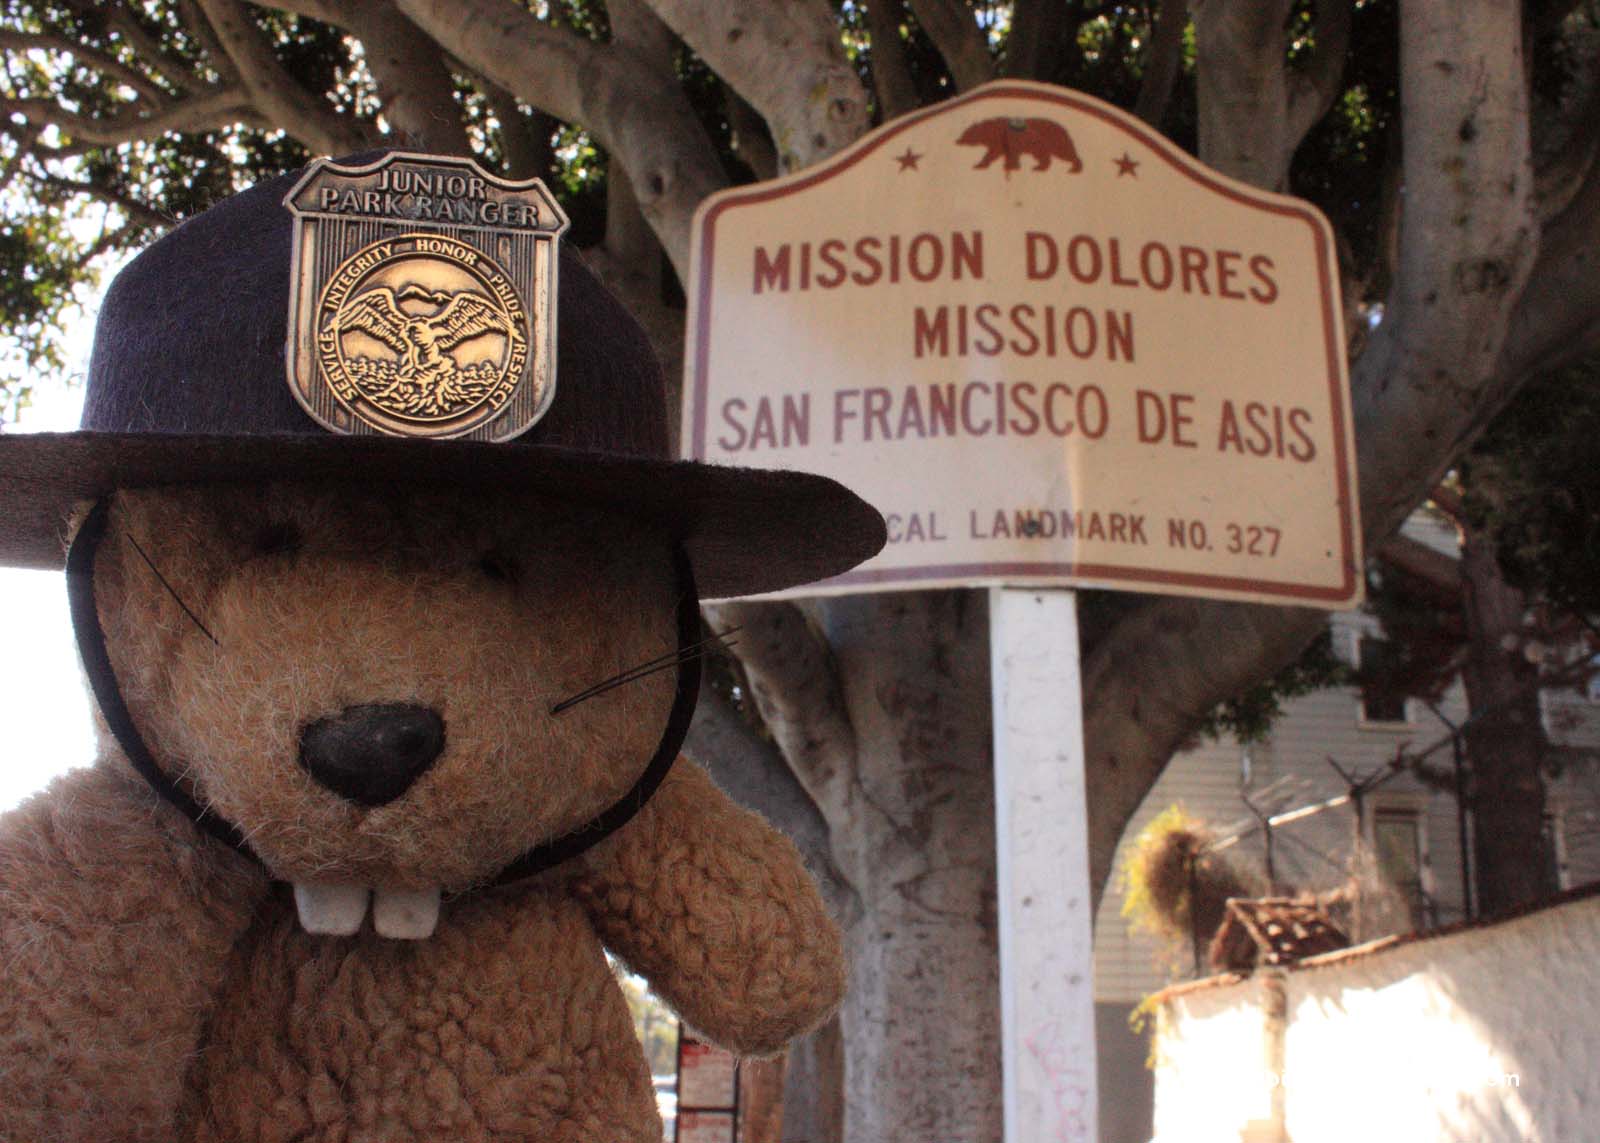 Mission Dolores (Mission San Francisco de Asis)